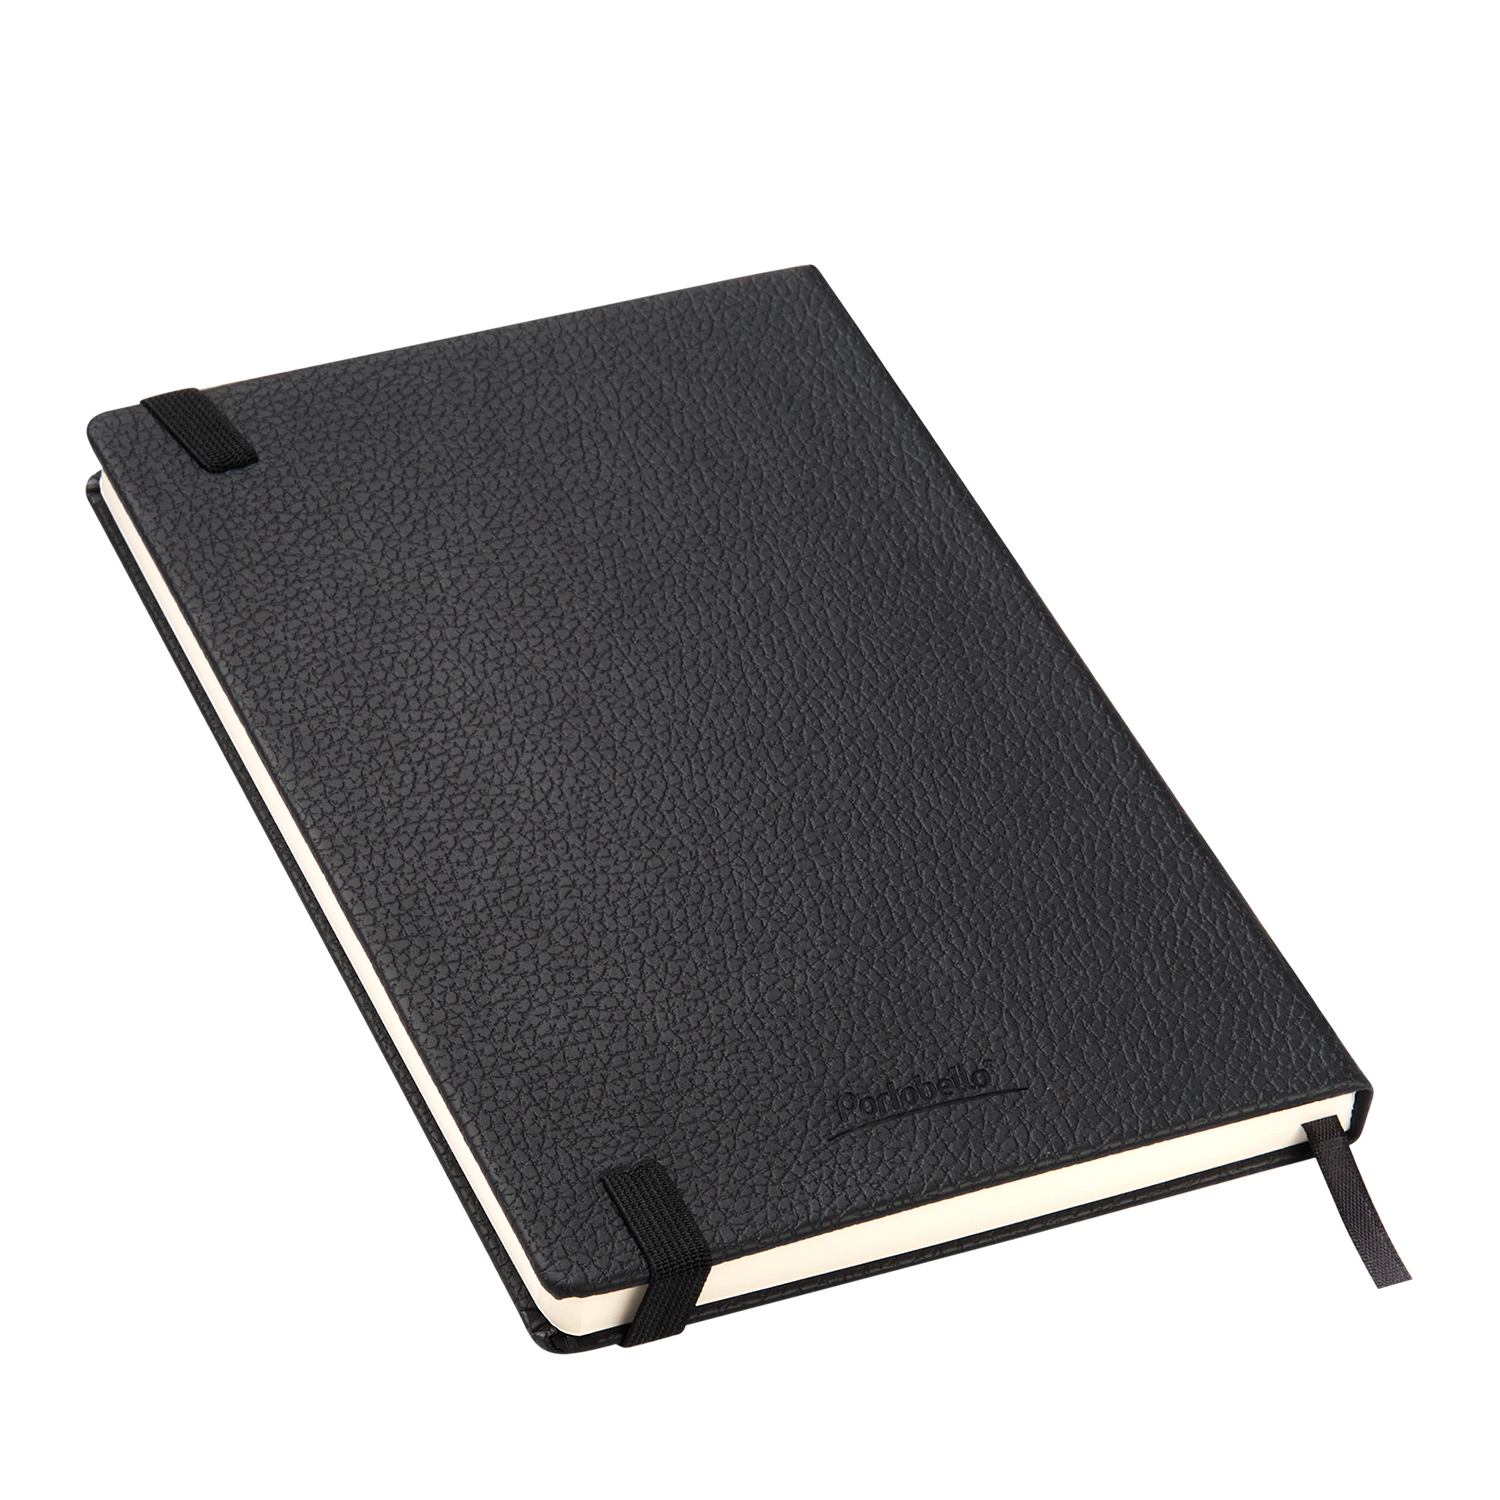 Ежедневник Dallas Btobook недатированный, черный (без упаковки, без стикера), черный